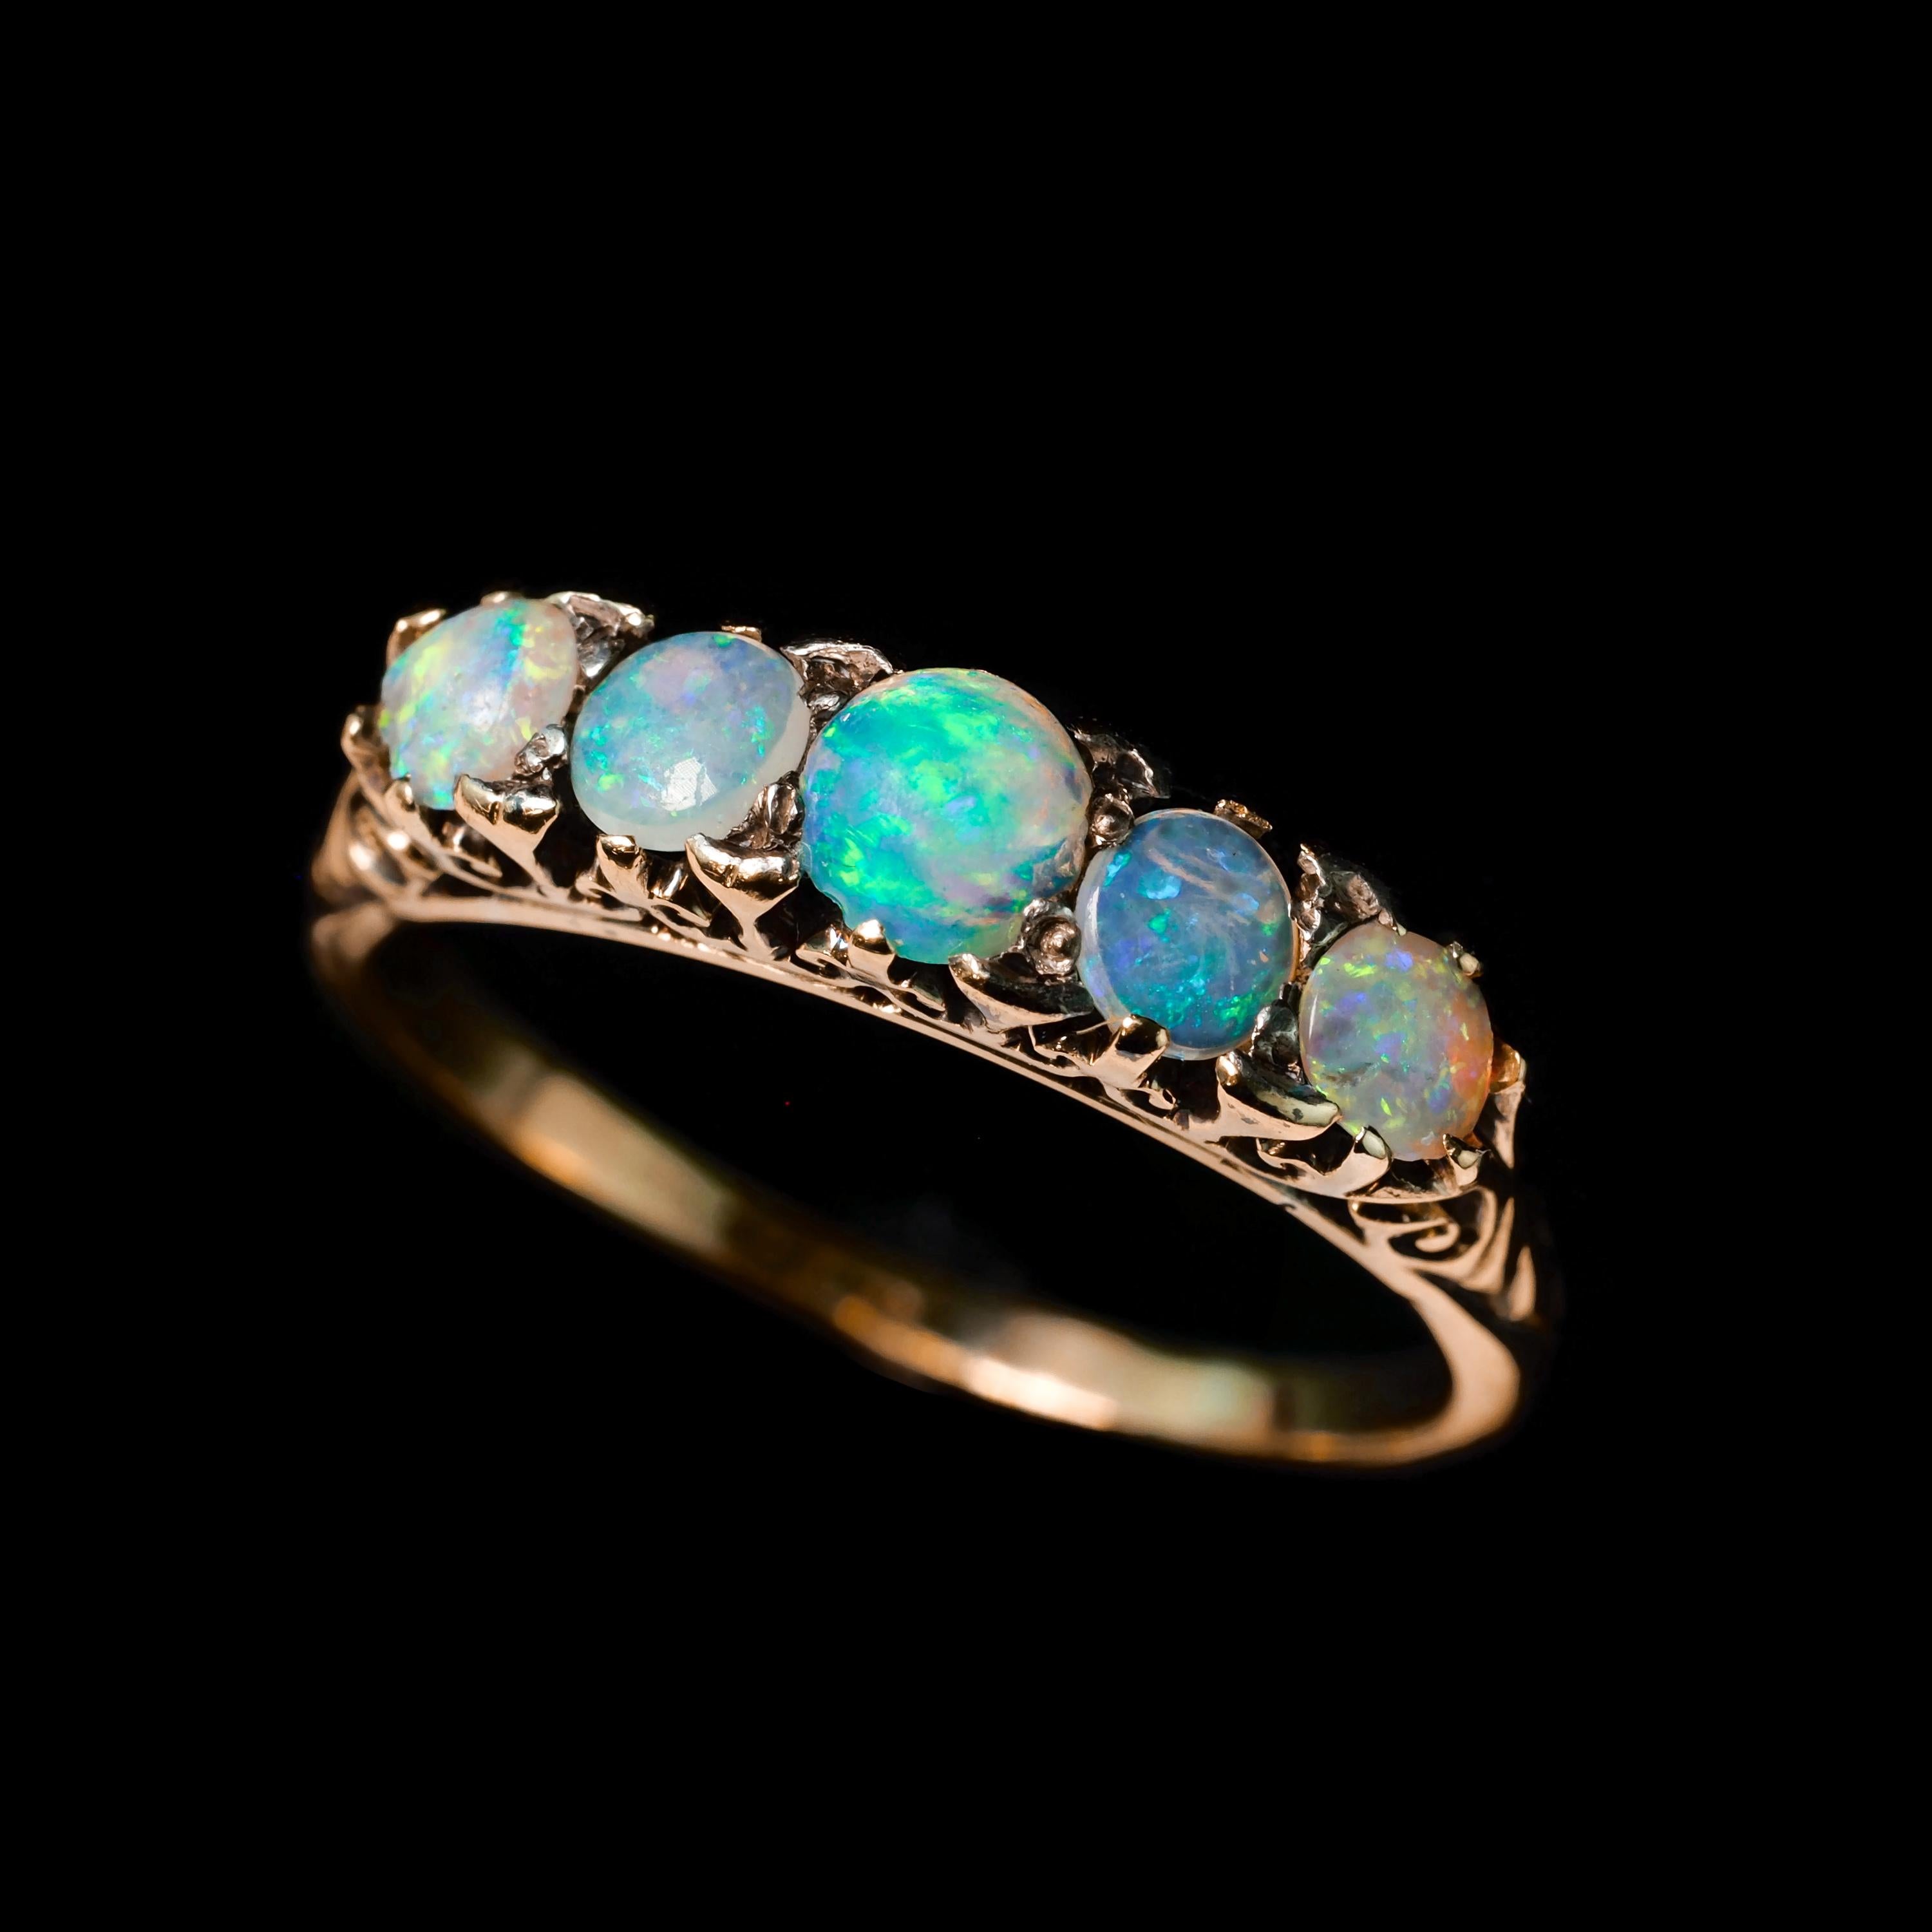 Antique Opal 14K Gold Ring with 5 Cabochons & Fleur-de-lis - Victorian c.1890 9